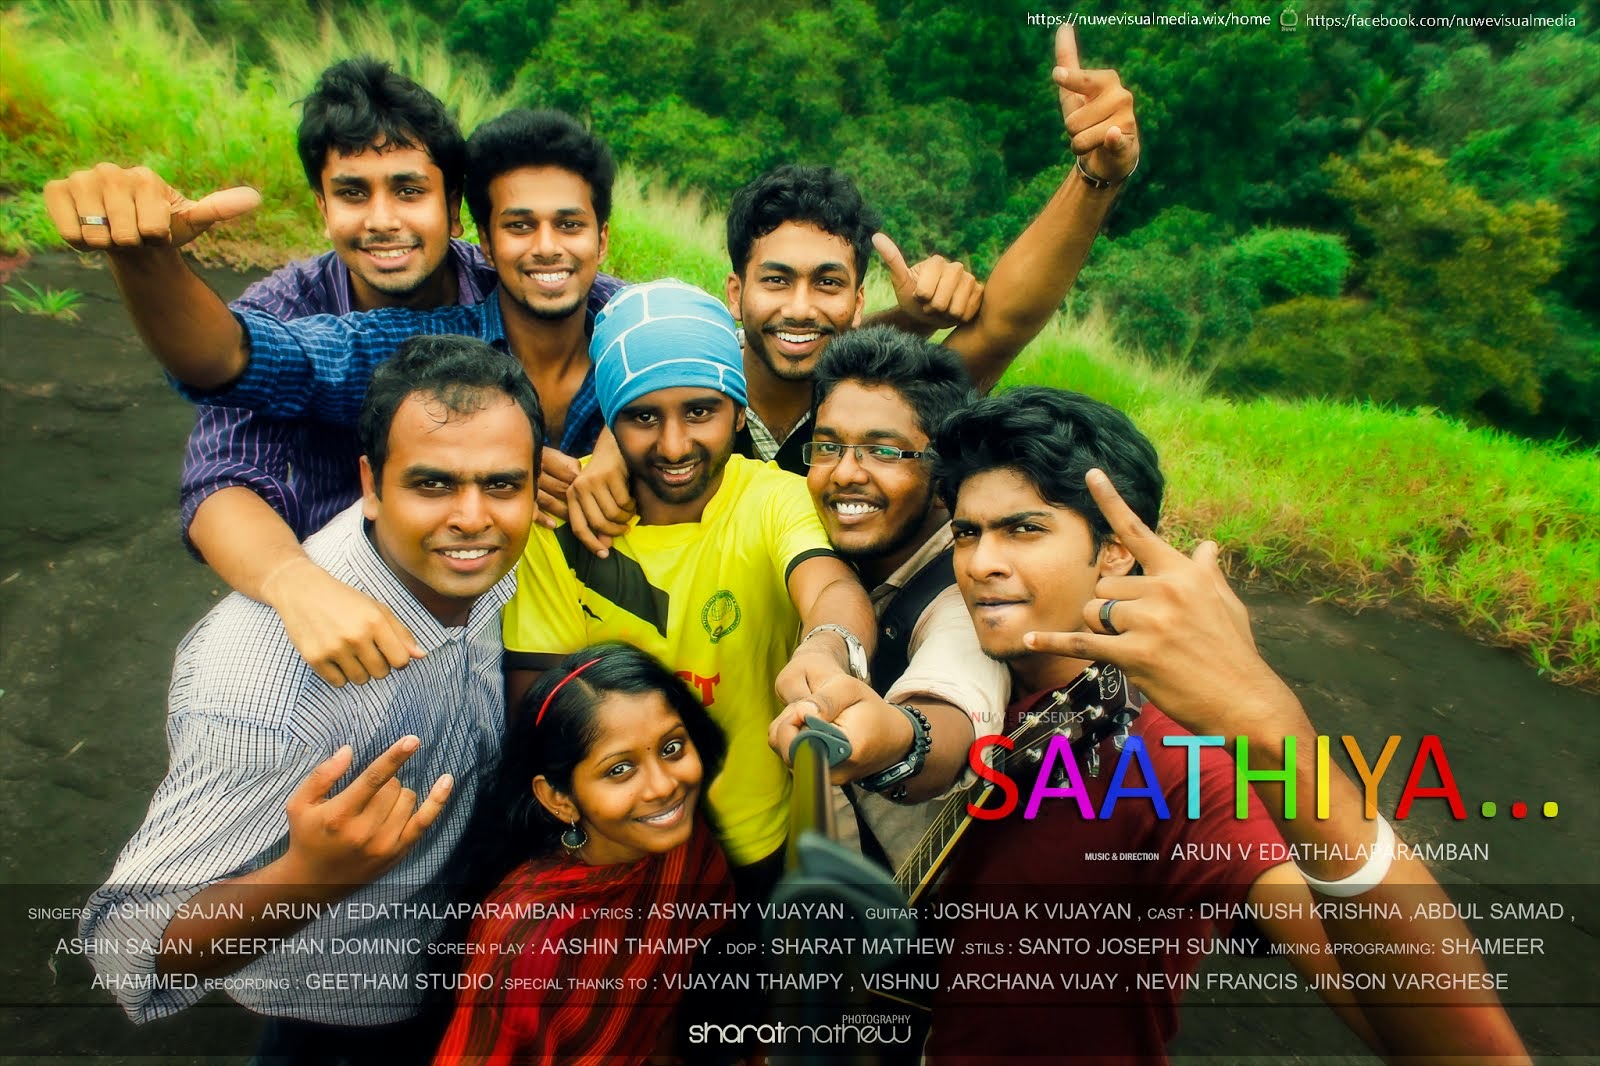 Saathiya Friendship Song Initial Look